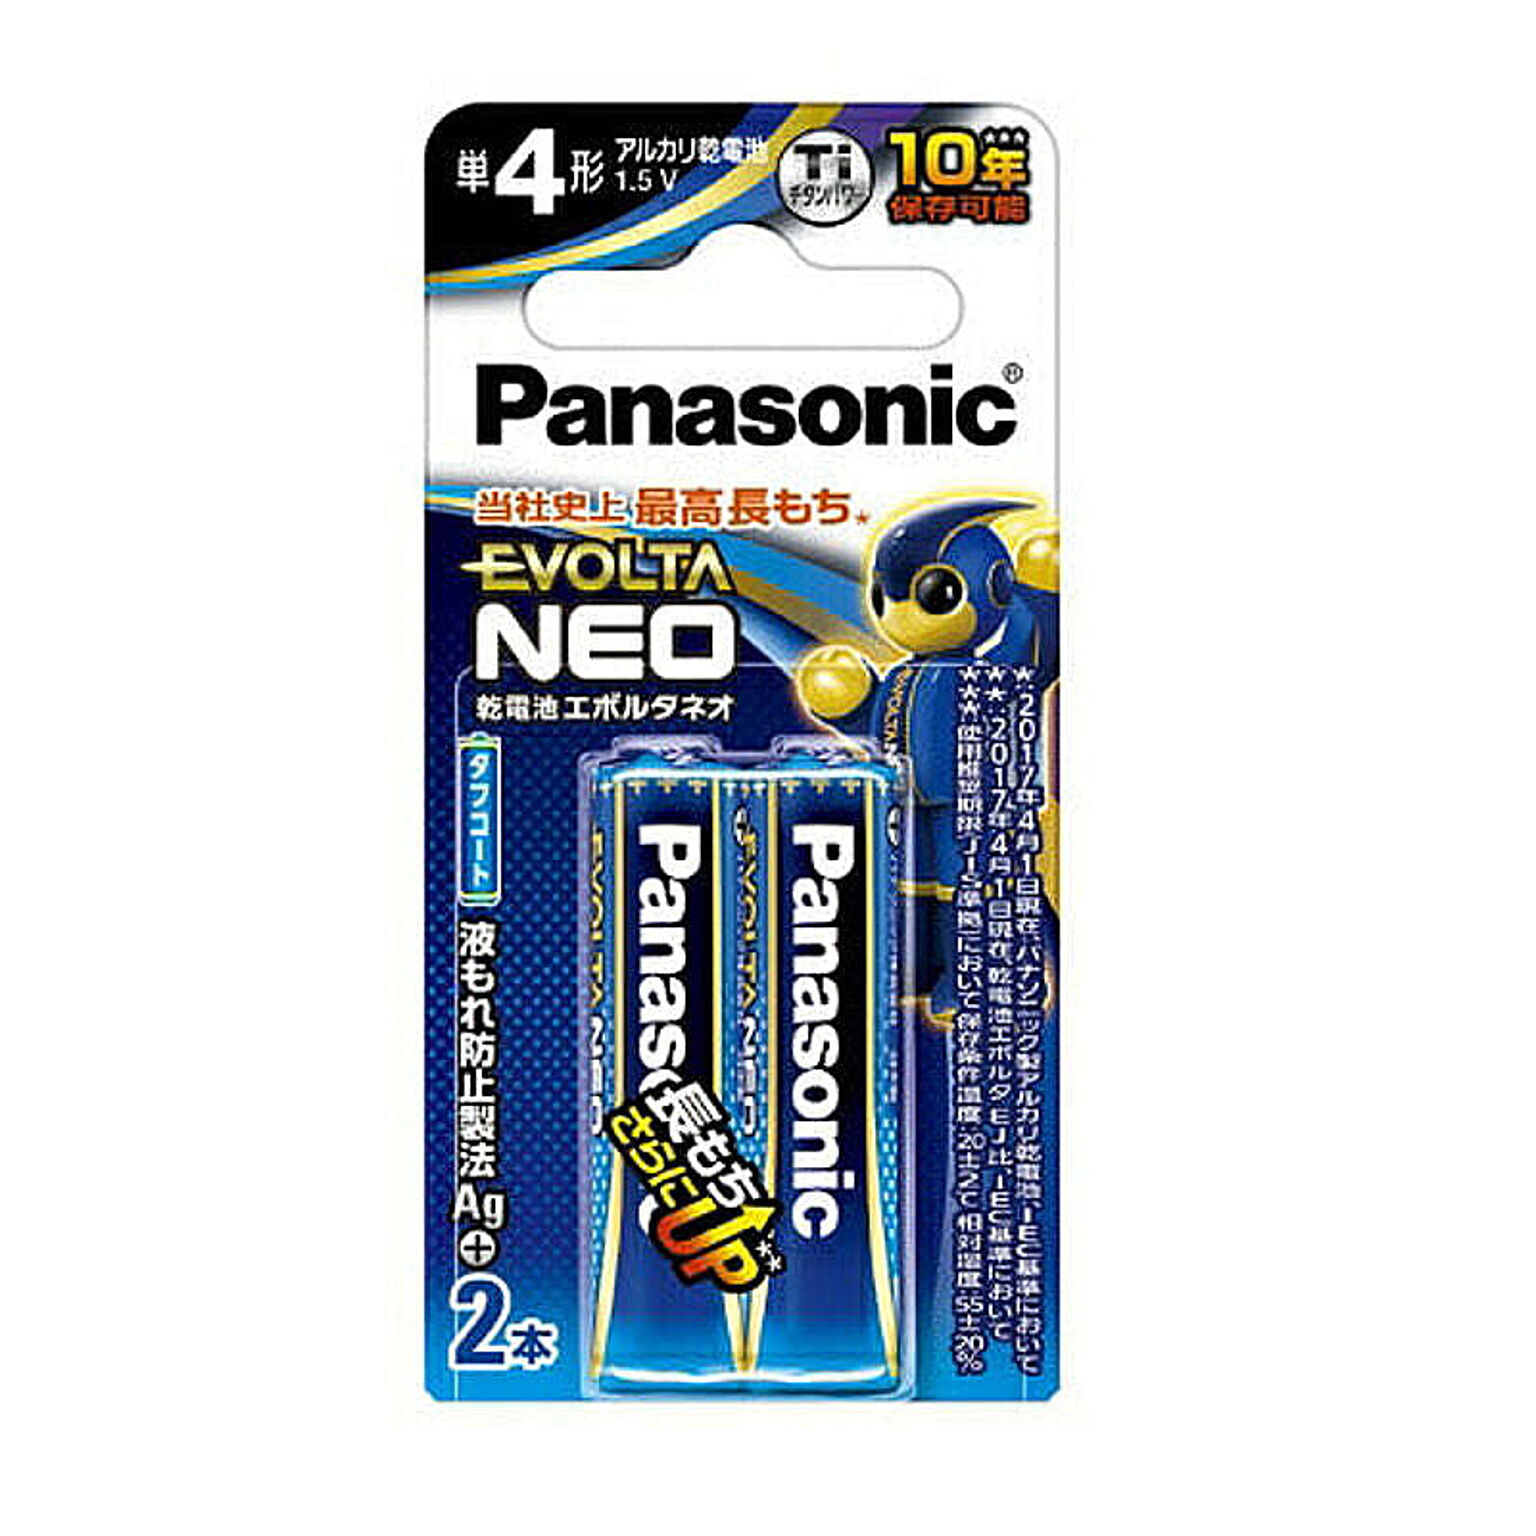 パナソニック Panasonic EVOLTA NEO エボルタネオ 単4形アルカリ乾電池 2本パック 日本製 LR03NJ/2B 台風 防災グッズ 管理No. 4549077898982